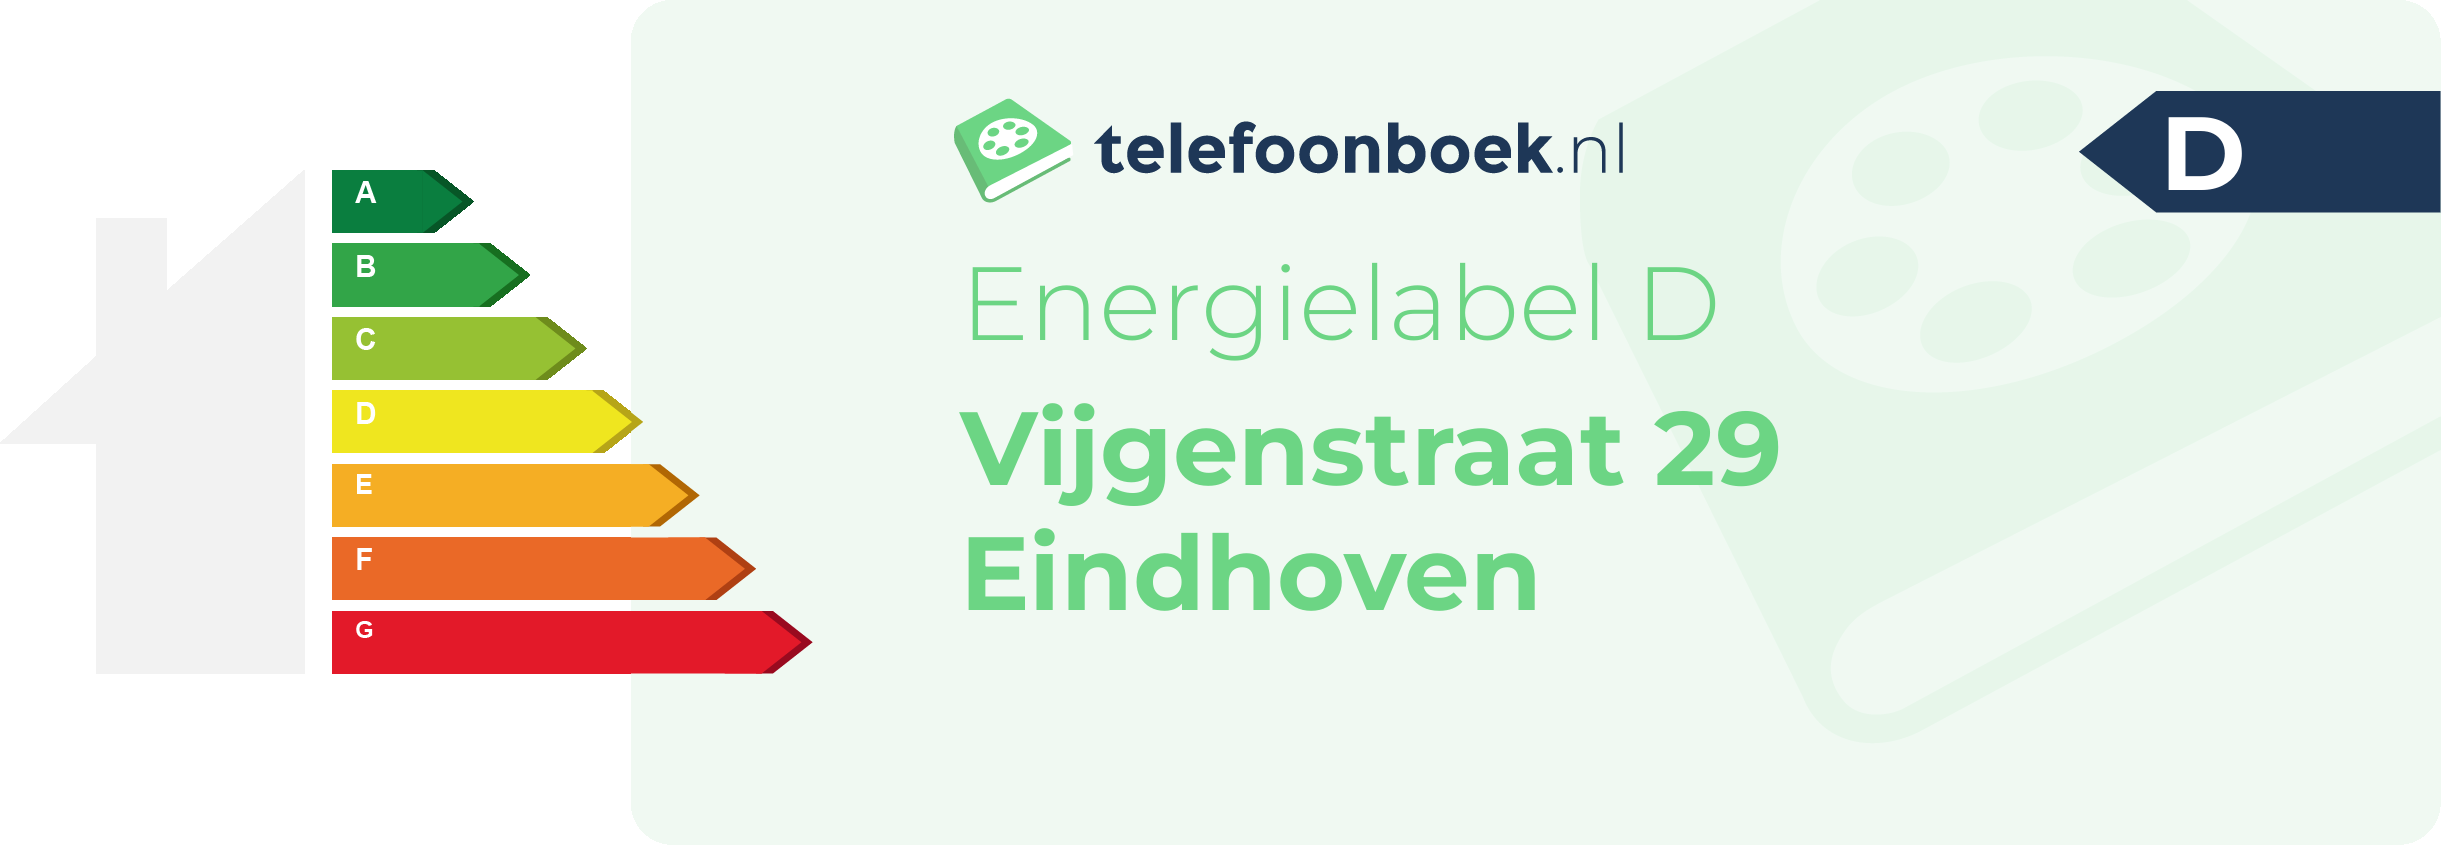 Energielabel Vijgenstraat 29 Eindhoven